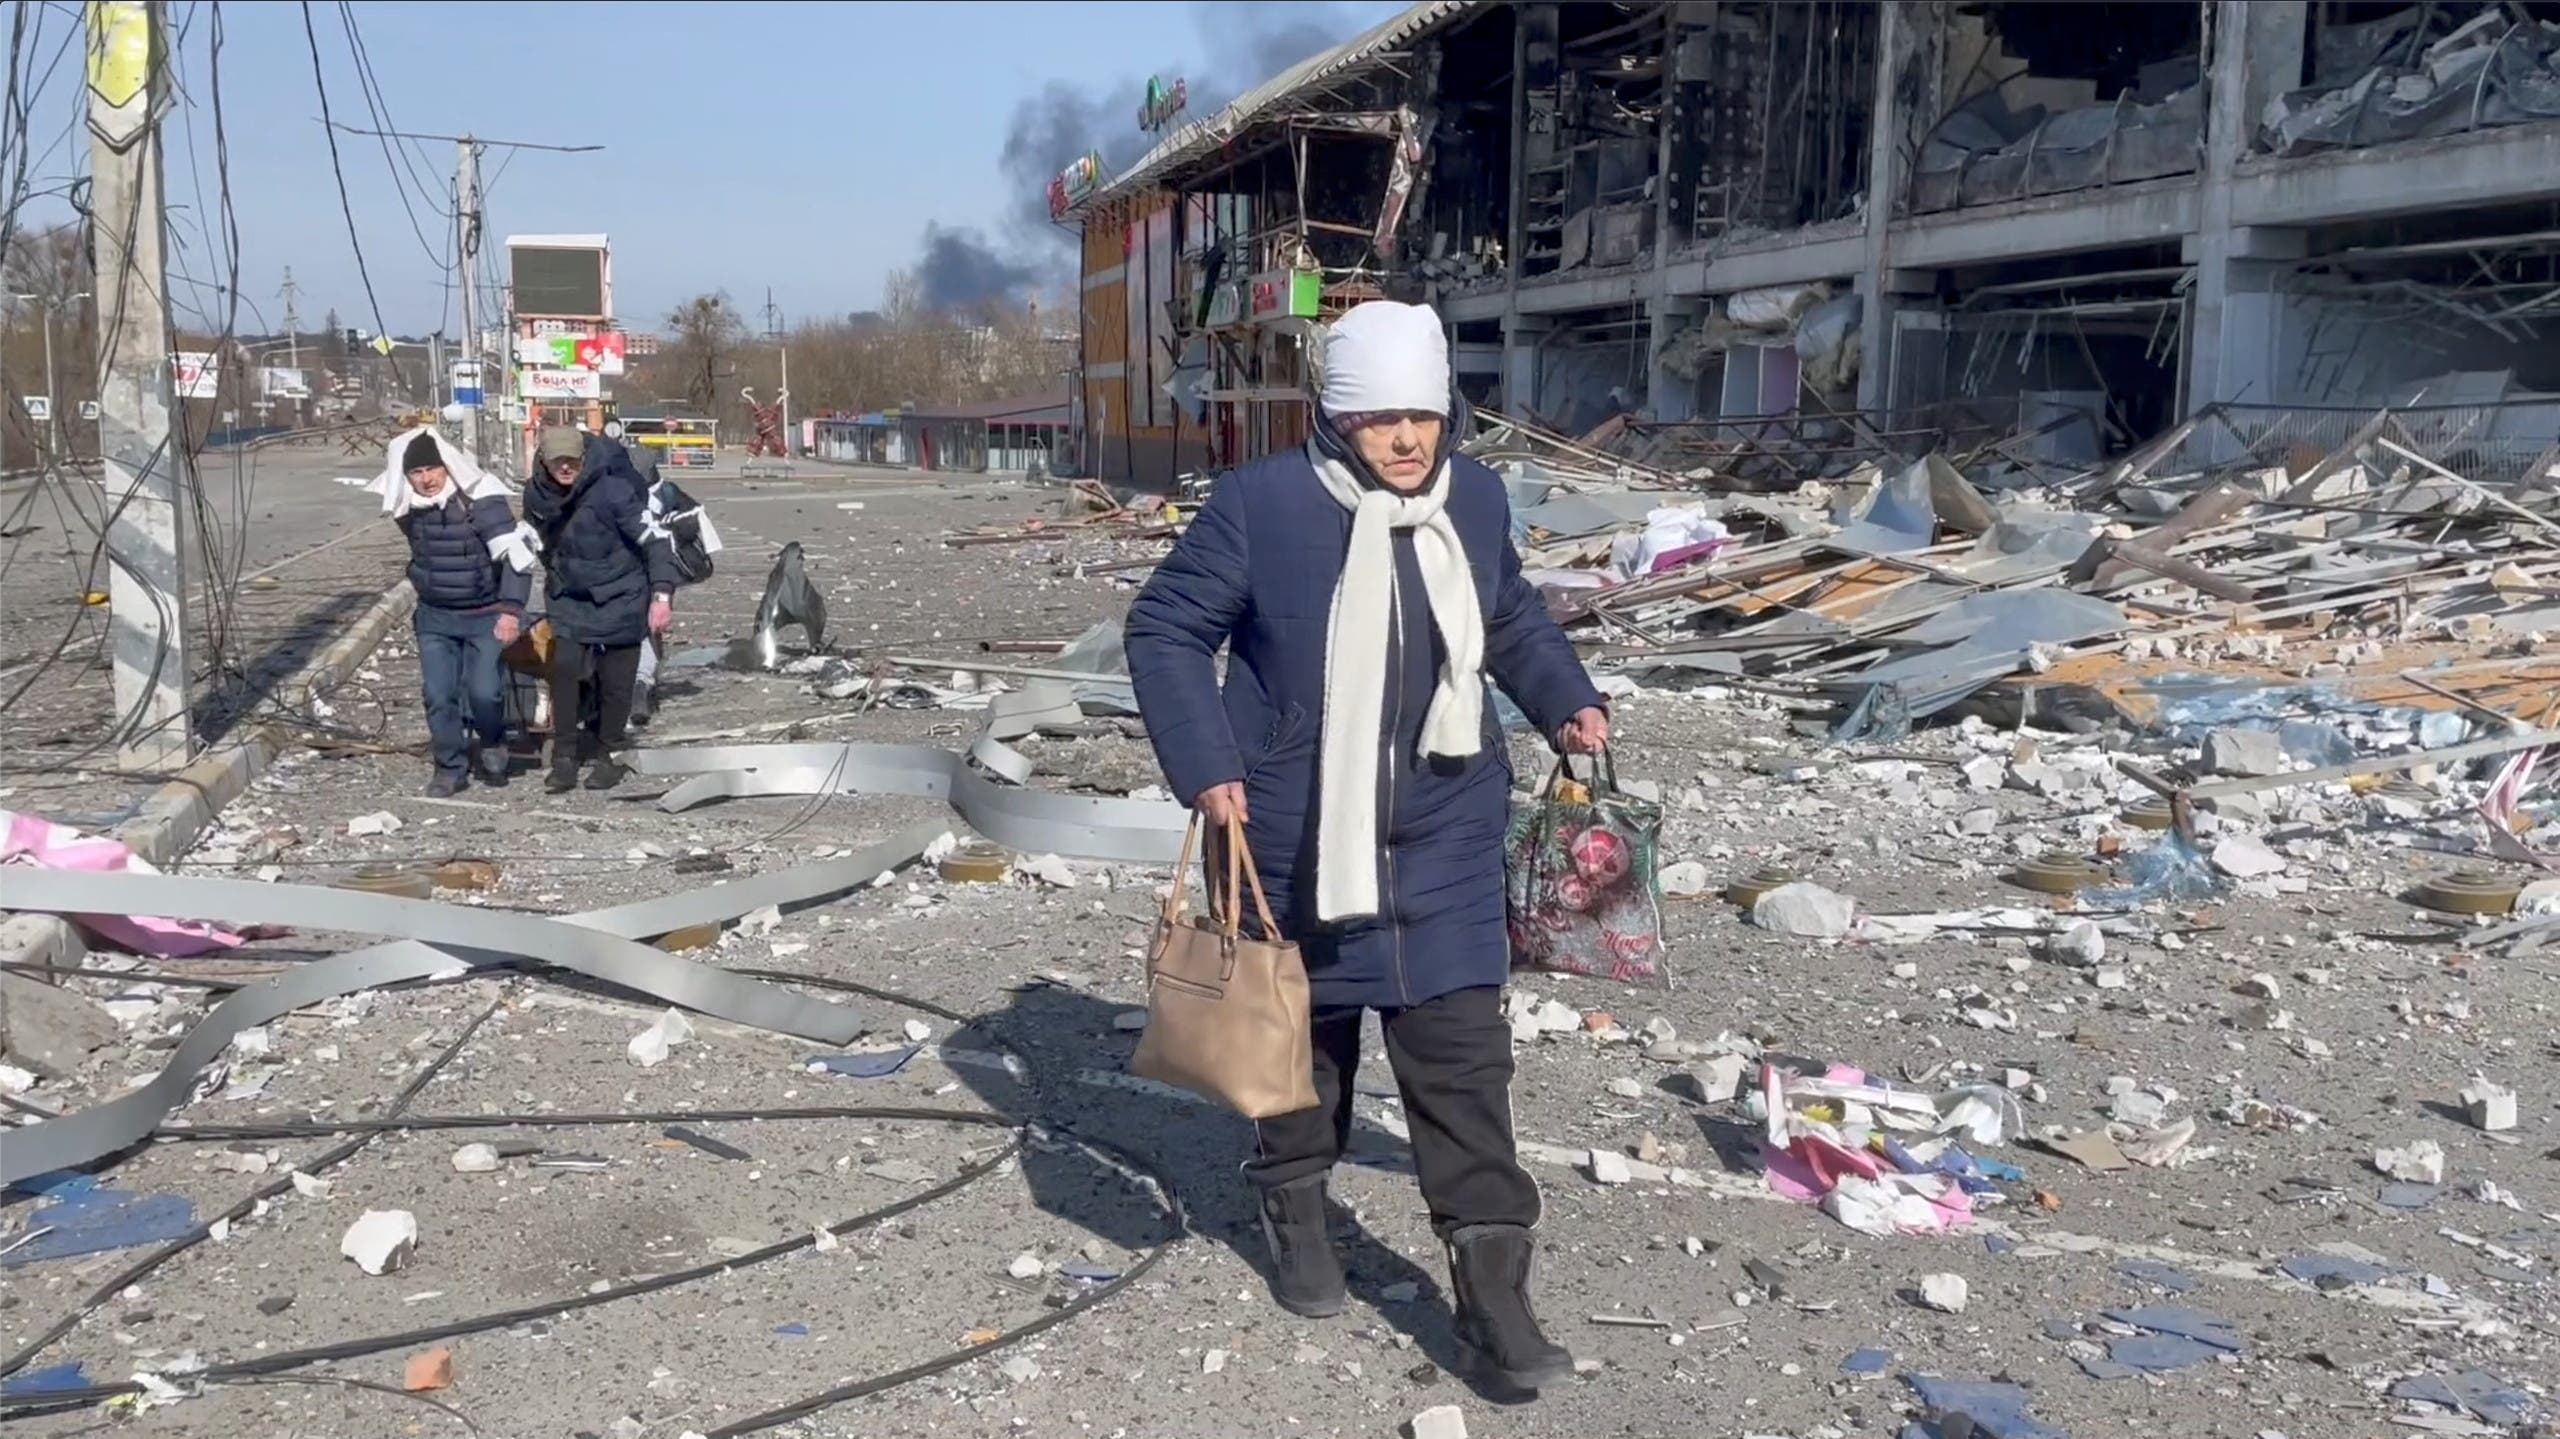 الدمار الذي خلفه القتال في أوكرانيا